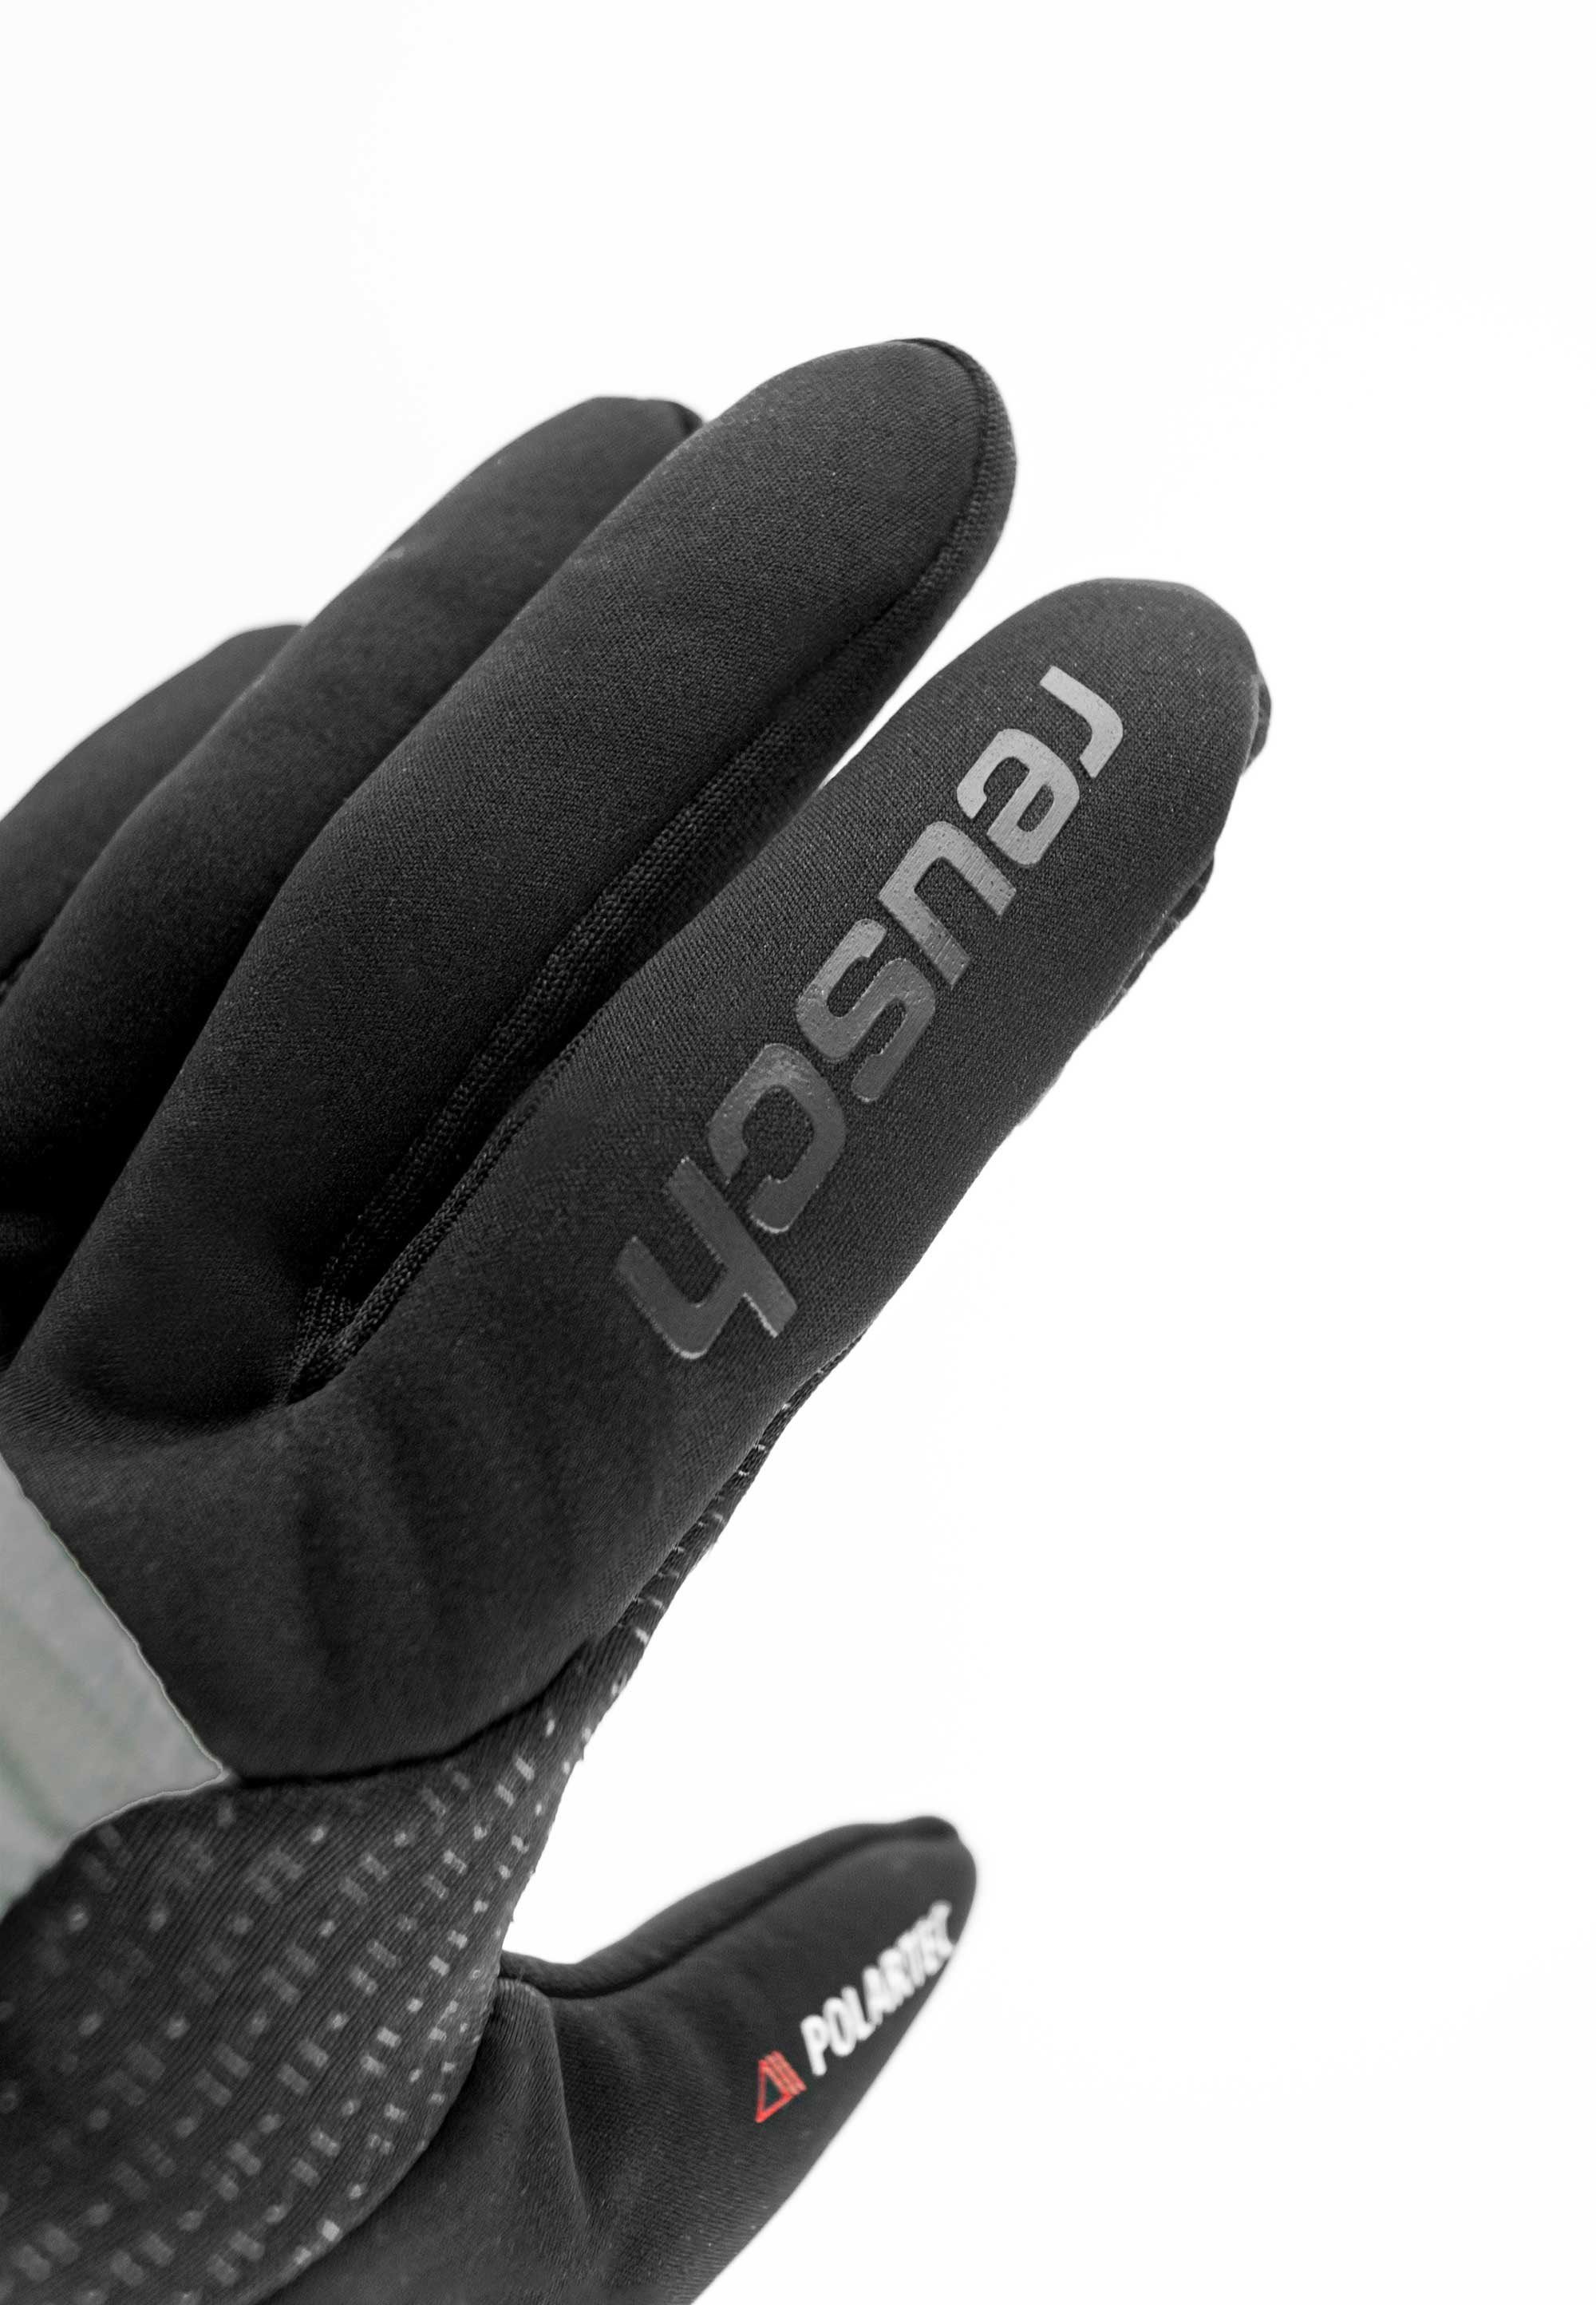 Reusch Skihandschuhe Garhwal praktischer mit Hybrid grau-schwarz Touchscreen-Funktion